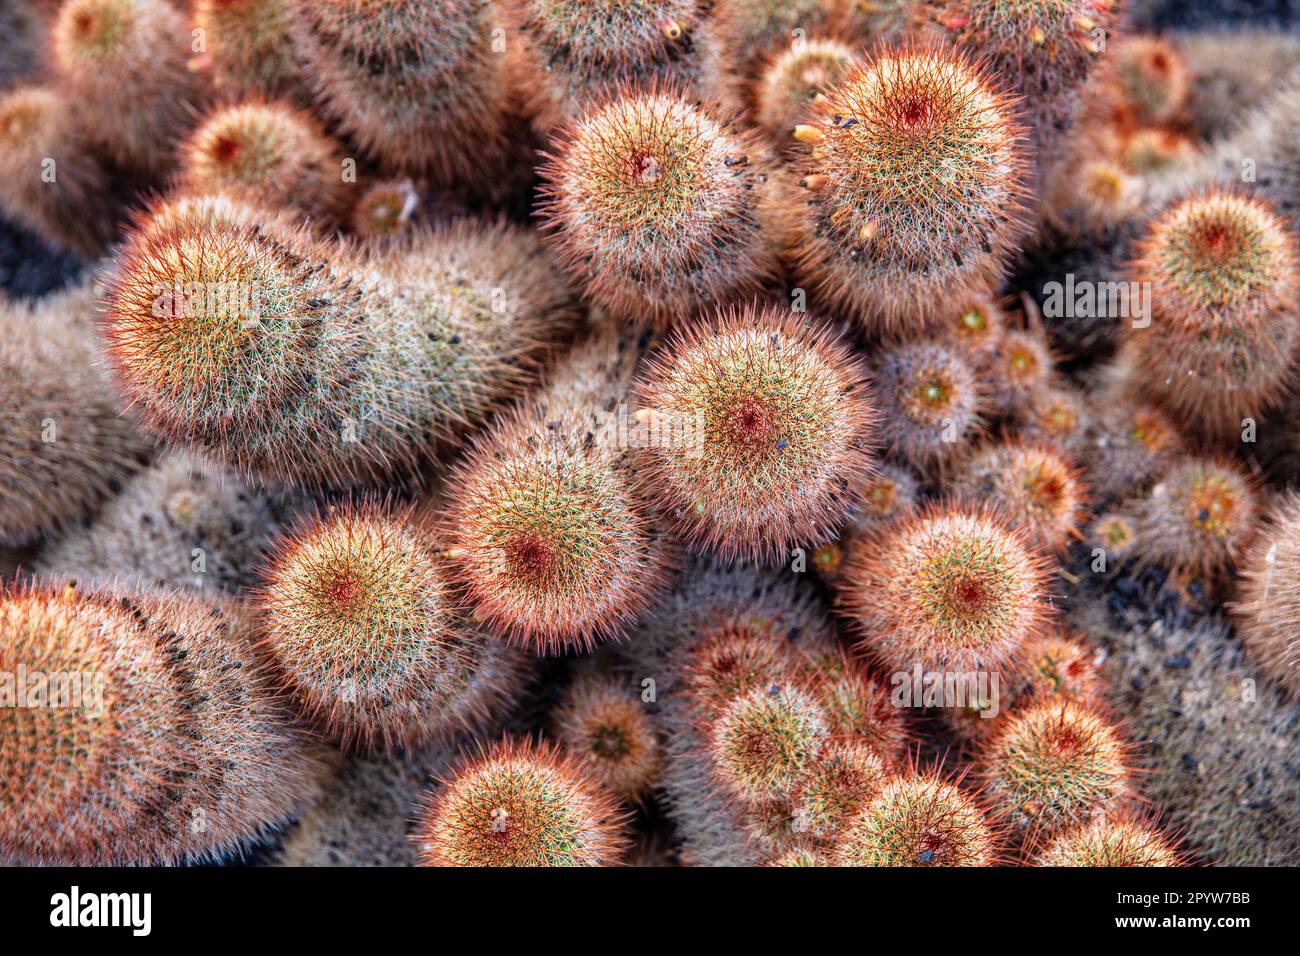 Spagna, Isole Canarie, Lanzarote, Guatiza. Giardino di Cactus, Jardin de Cactus, progettato da Cesar Manrique. Foto Stock